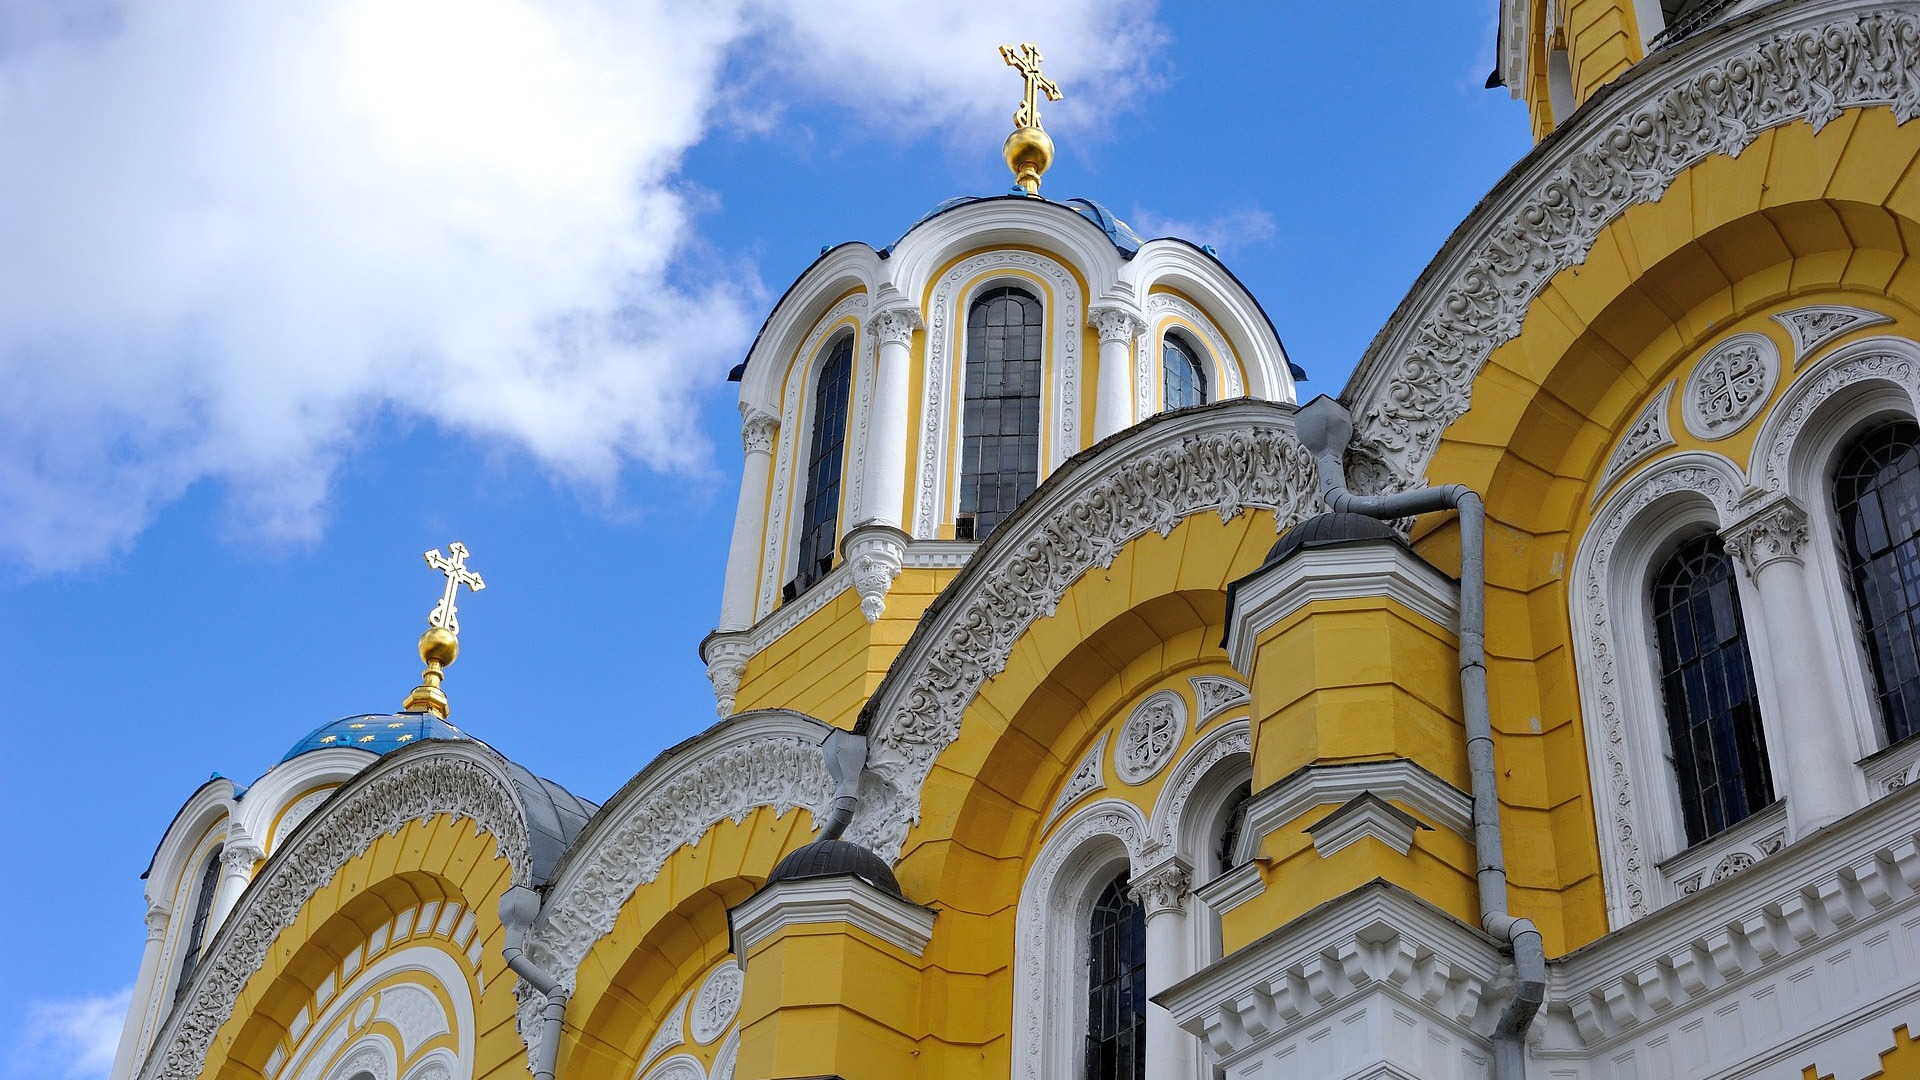 St. Vladimir's Cathedral in Kiev, Ukraine